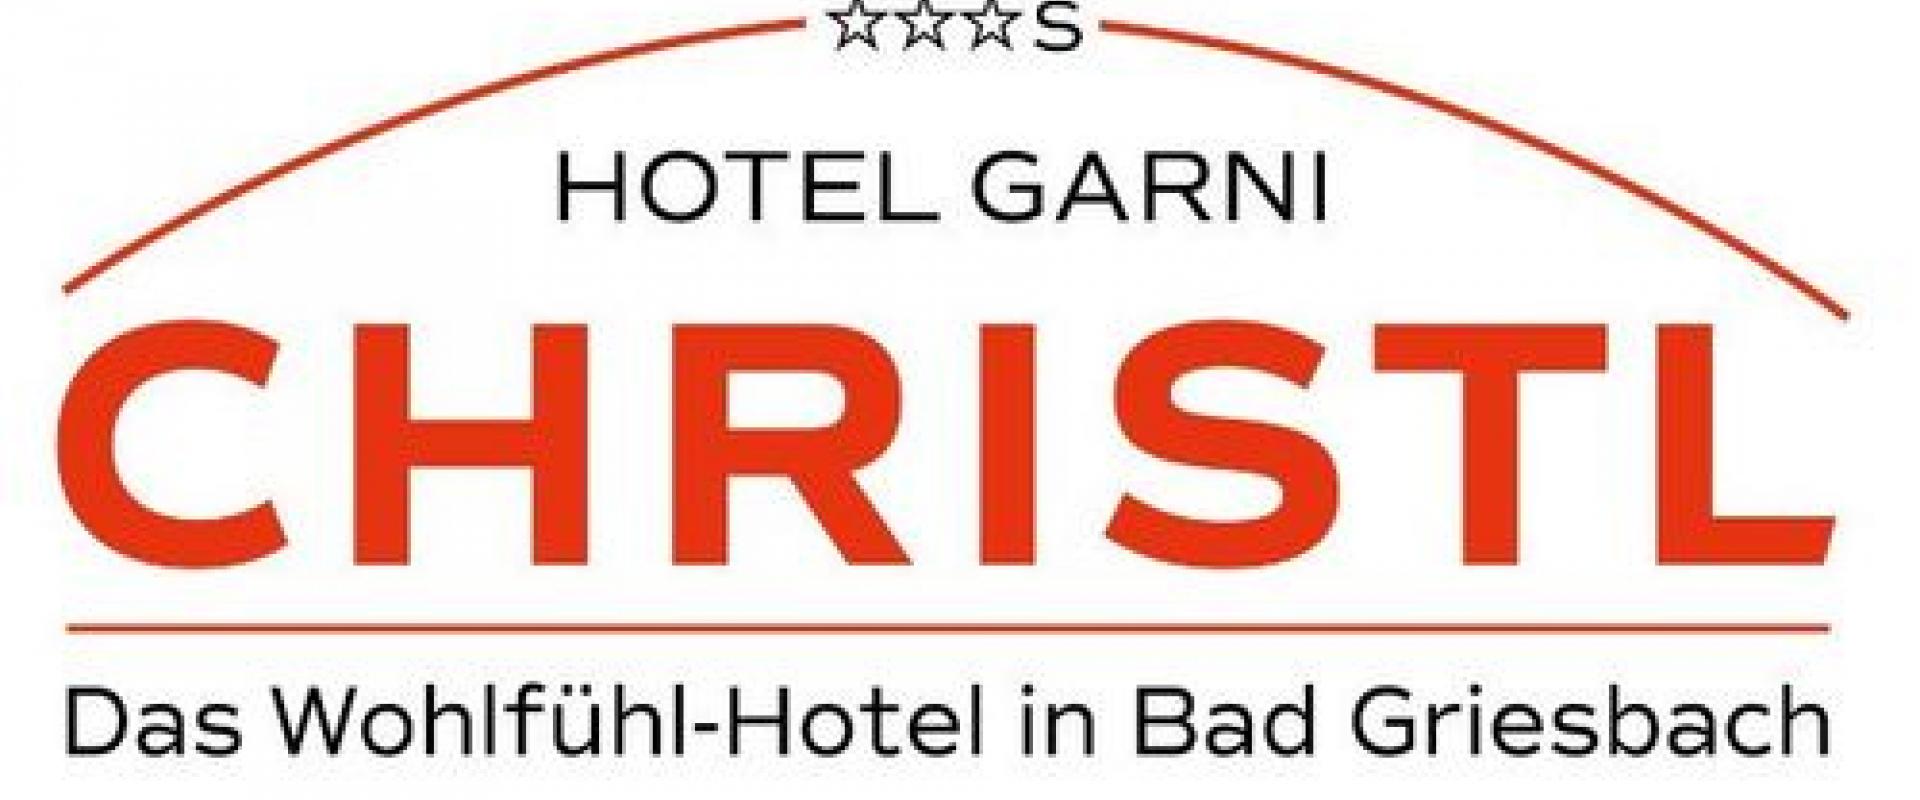 Hotel garni Christl logo.jpeg